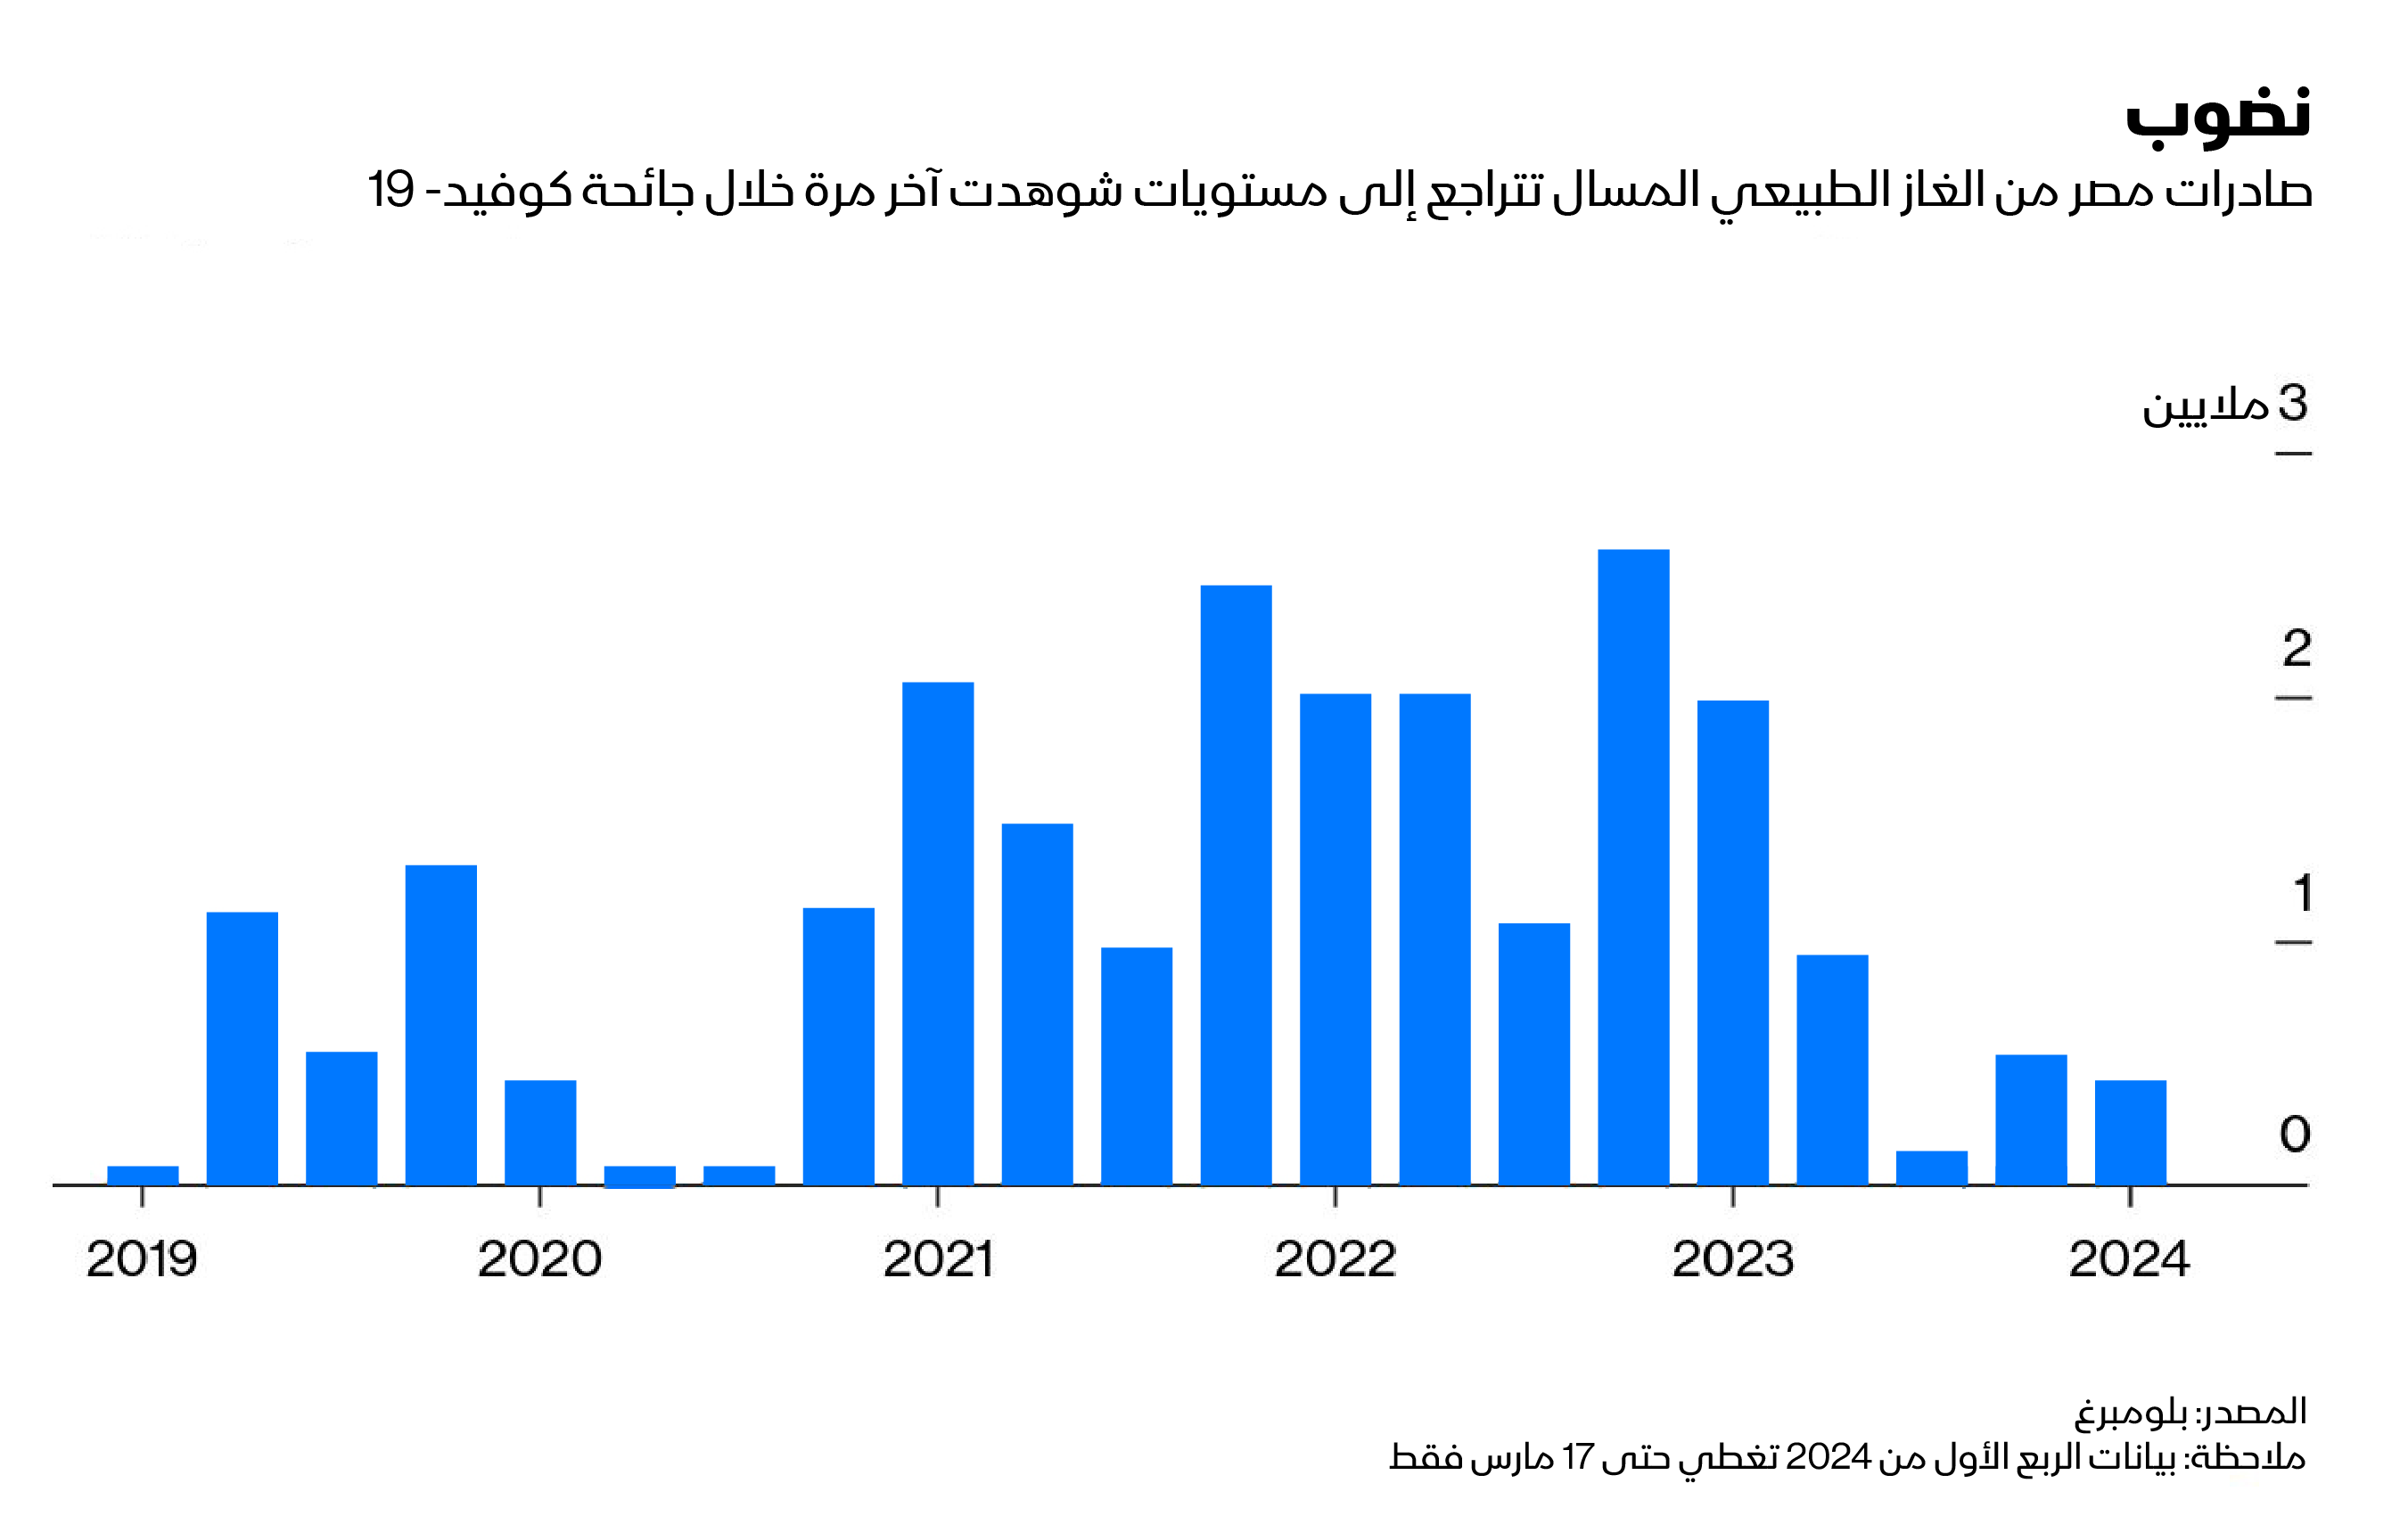 تراجع الإنتاج في حقل ظُهر الذي دعم طفرة إنتاج الغاز في مصر